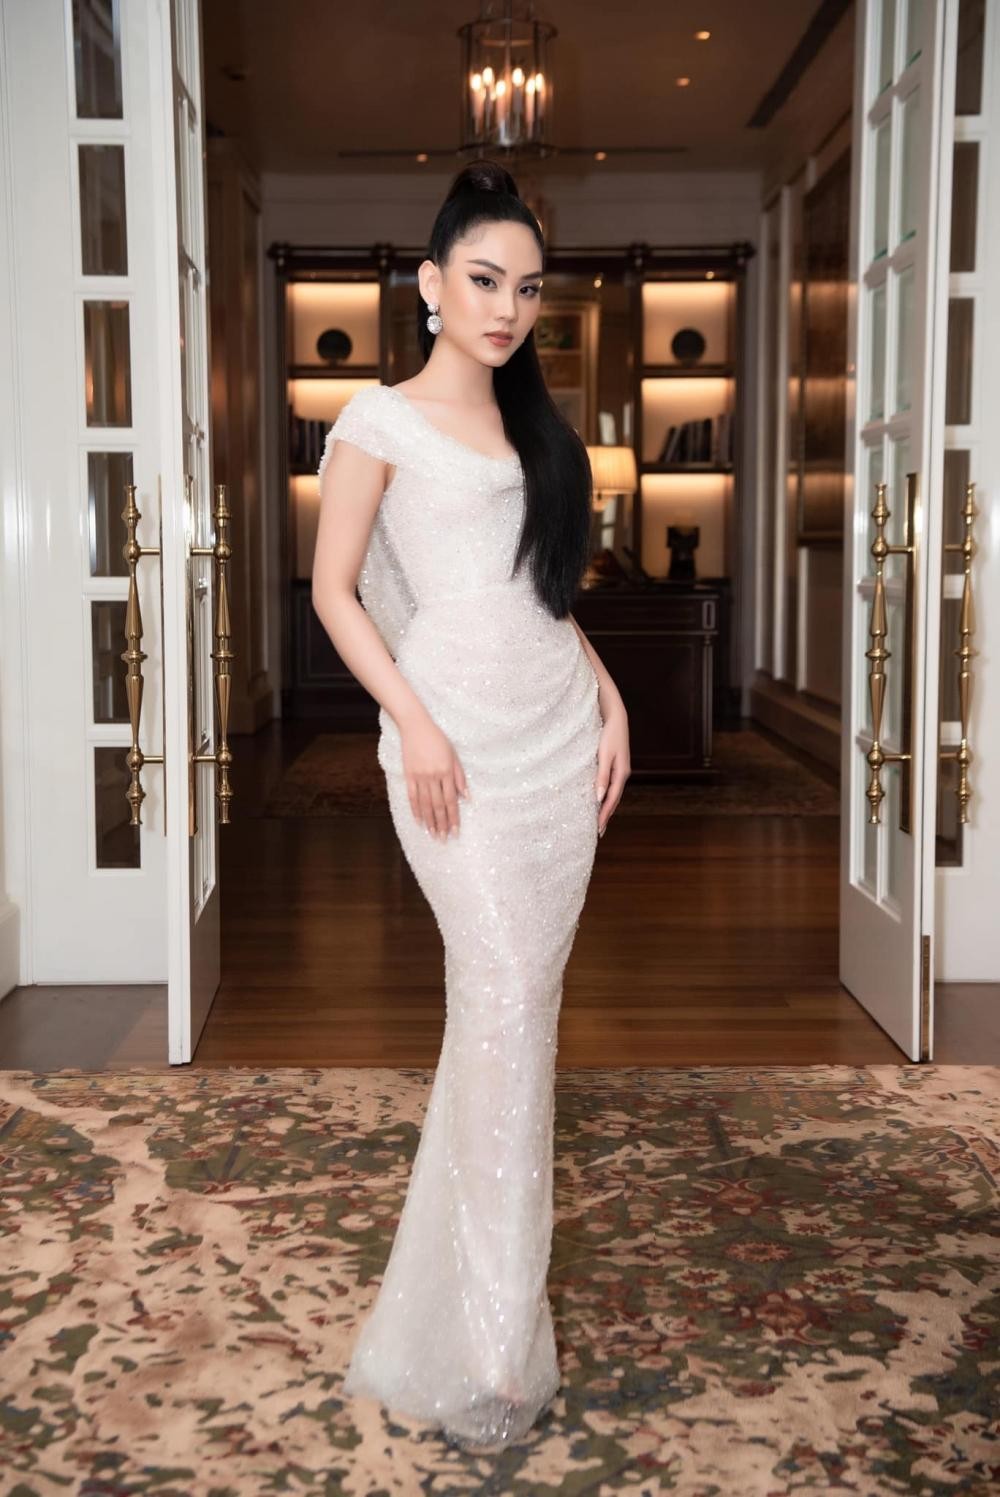 Hoa hậu Mai Phương cực khéo chọn đầm dạ hội, thiết kế nào cũng tôn dáng tuyệt đối - Ảnh 6.